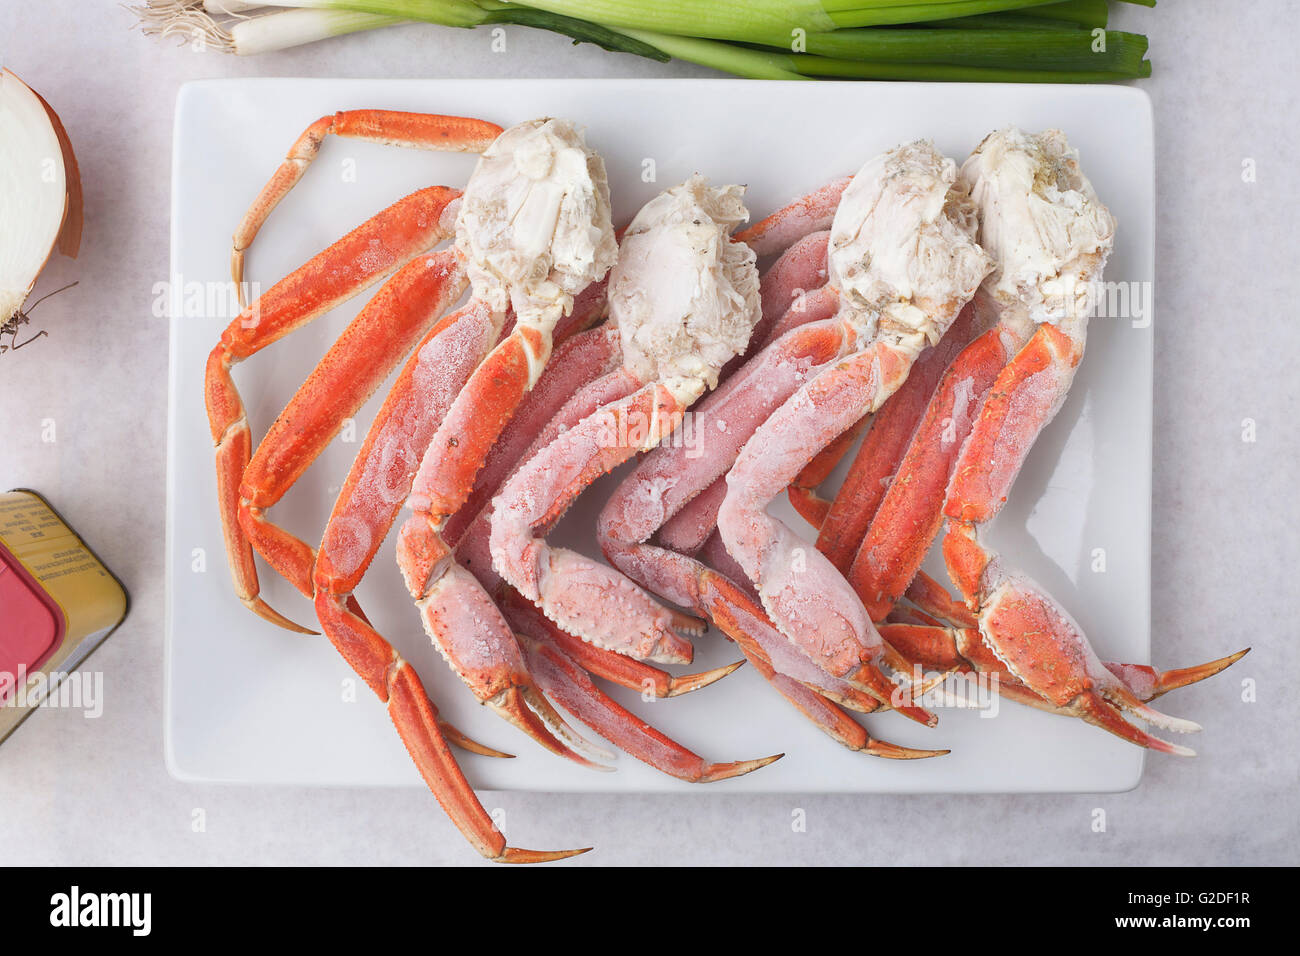 King Crabe congelé sur le plateau Photo Stock - Alamy